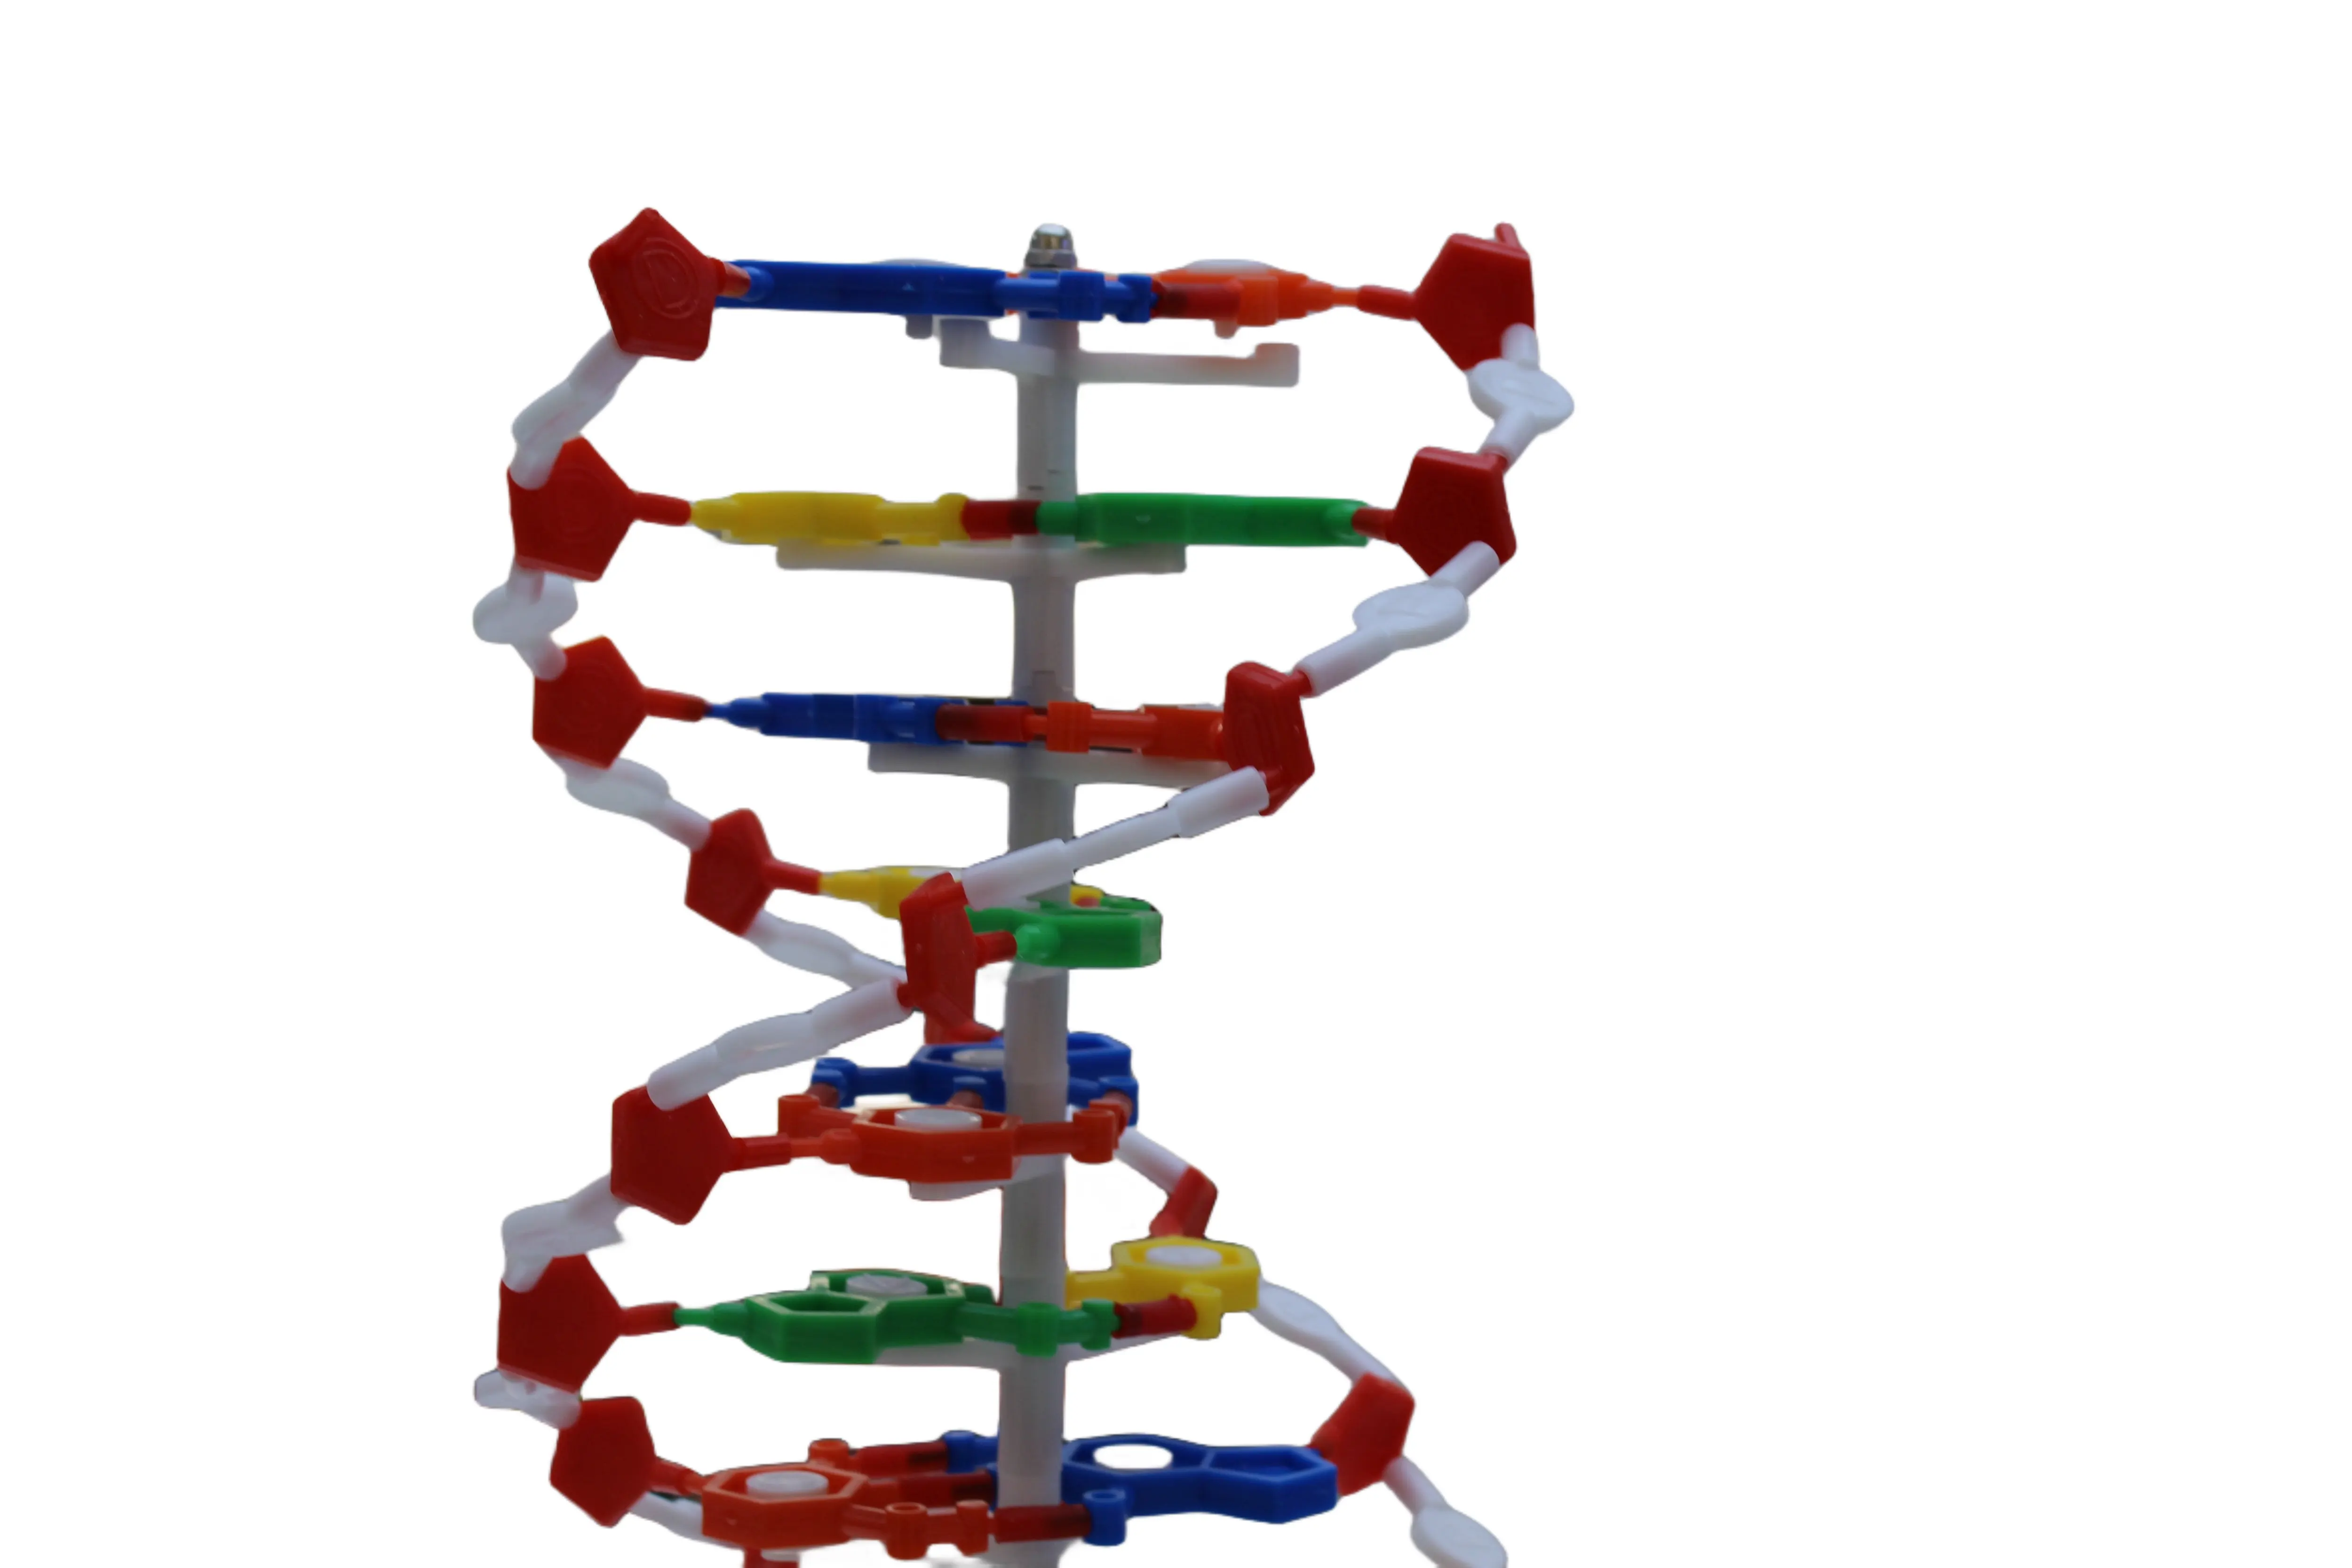 Vendite dirette in fabbrica, dimostrazione del modello di struttura a doppia elica del DNA nell'insegnamento della biologia